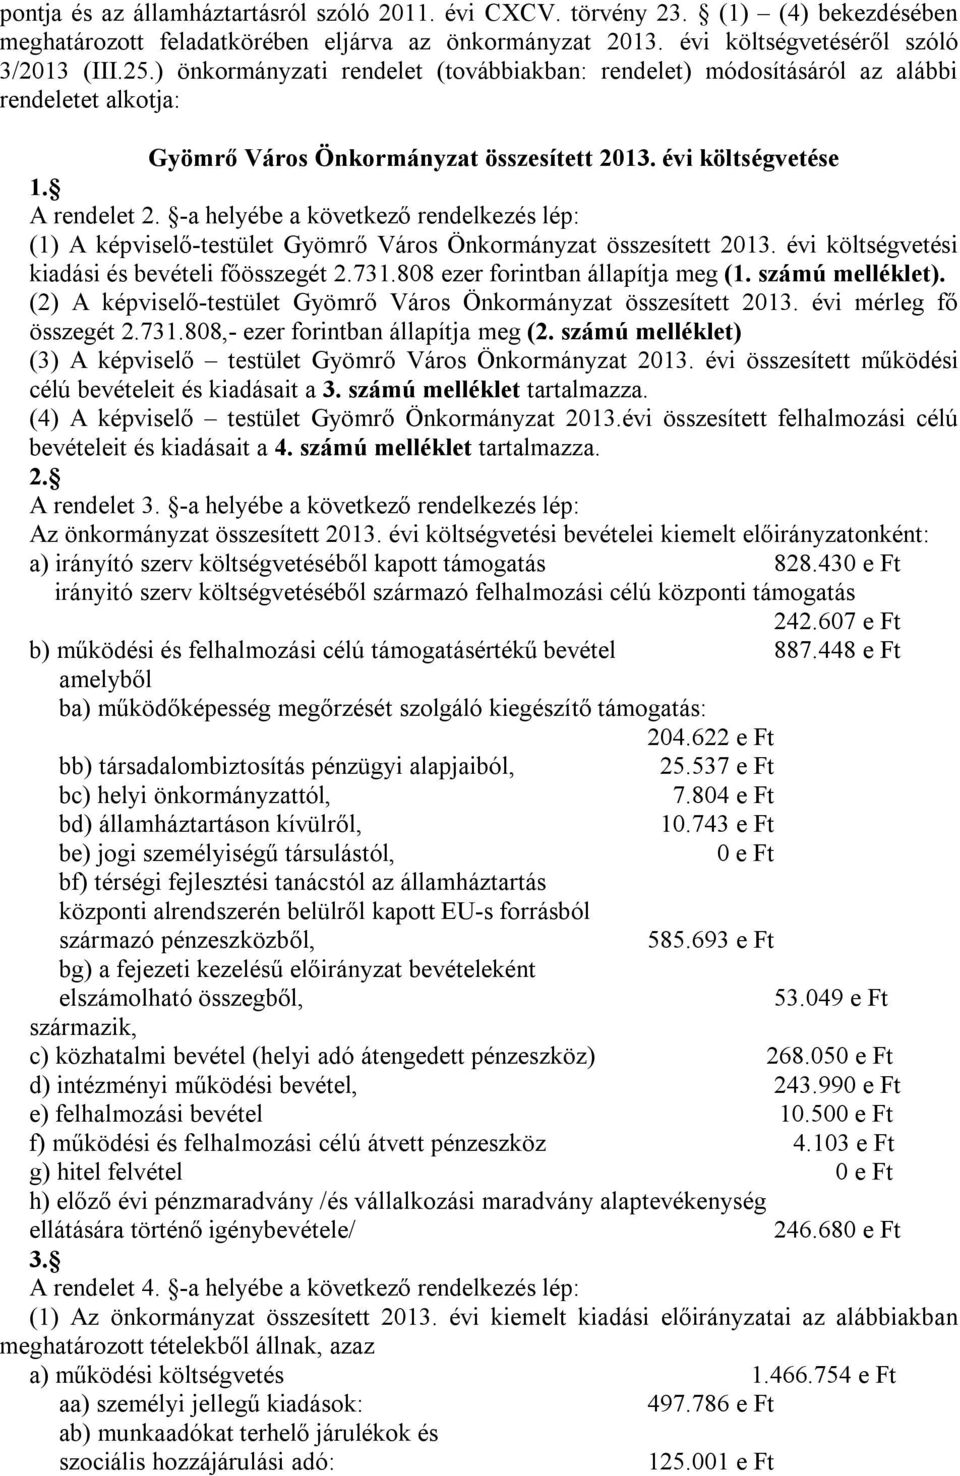 -a helyébe a következő rendelkezés lép: (1) A képviselő-testület Gyömrő Város Önkormányzat összesített 2013. évi költségvetési kiadási és bevételi főösszegét 2.731.808 ezer forintban állapítja meg (1.